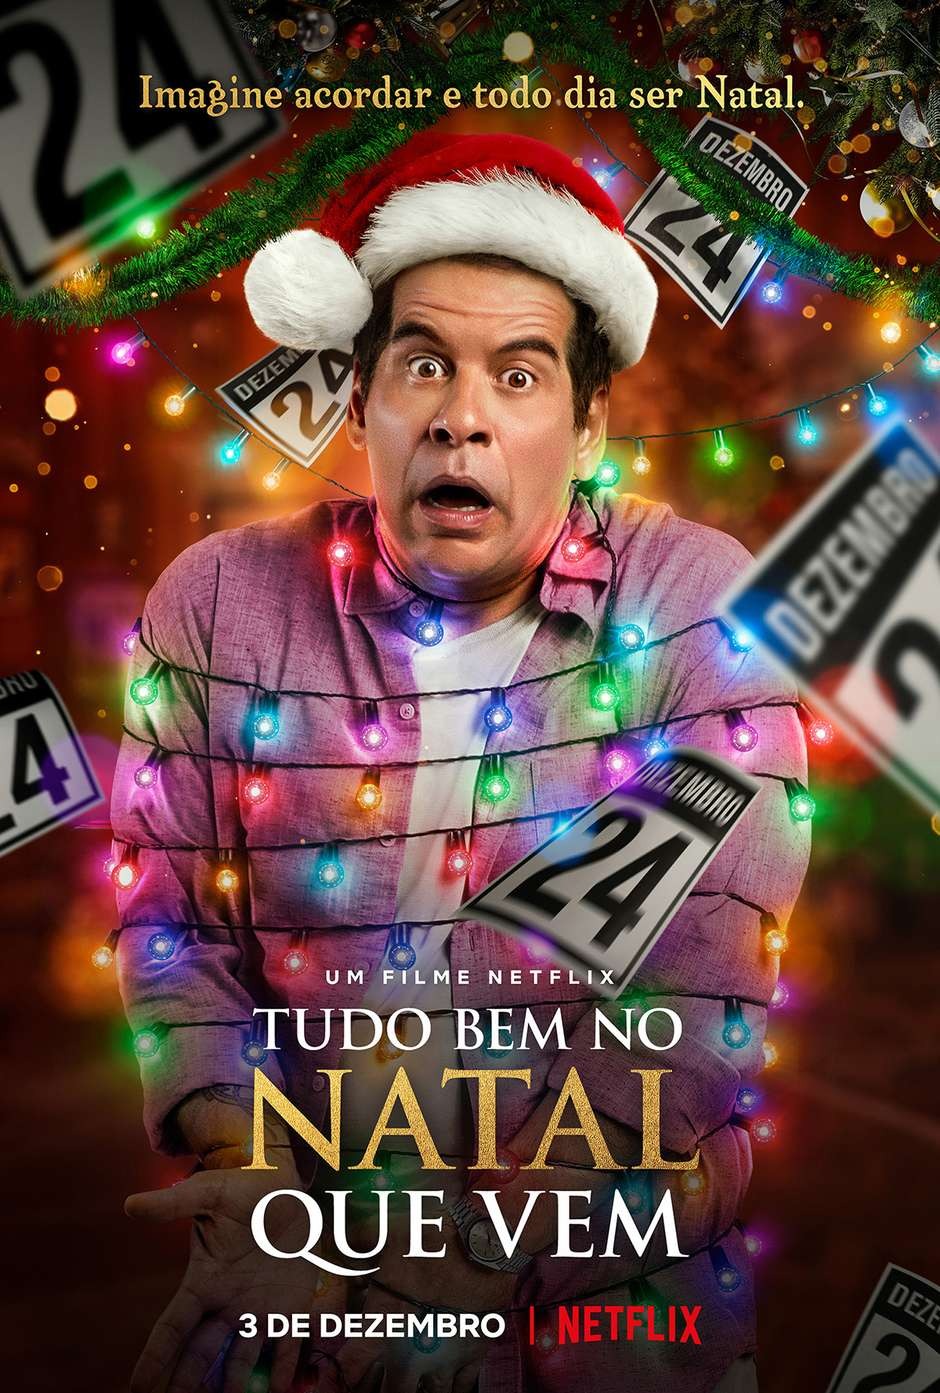 Extra Large Movie Poster Image for Tudo Bem No Natal Que Vem 